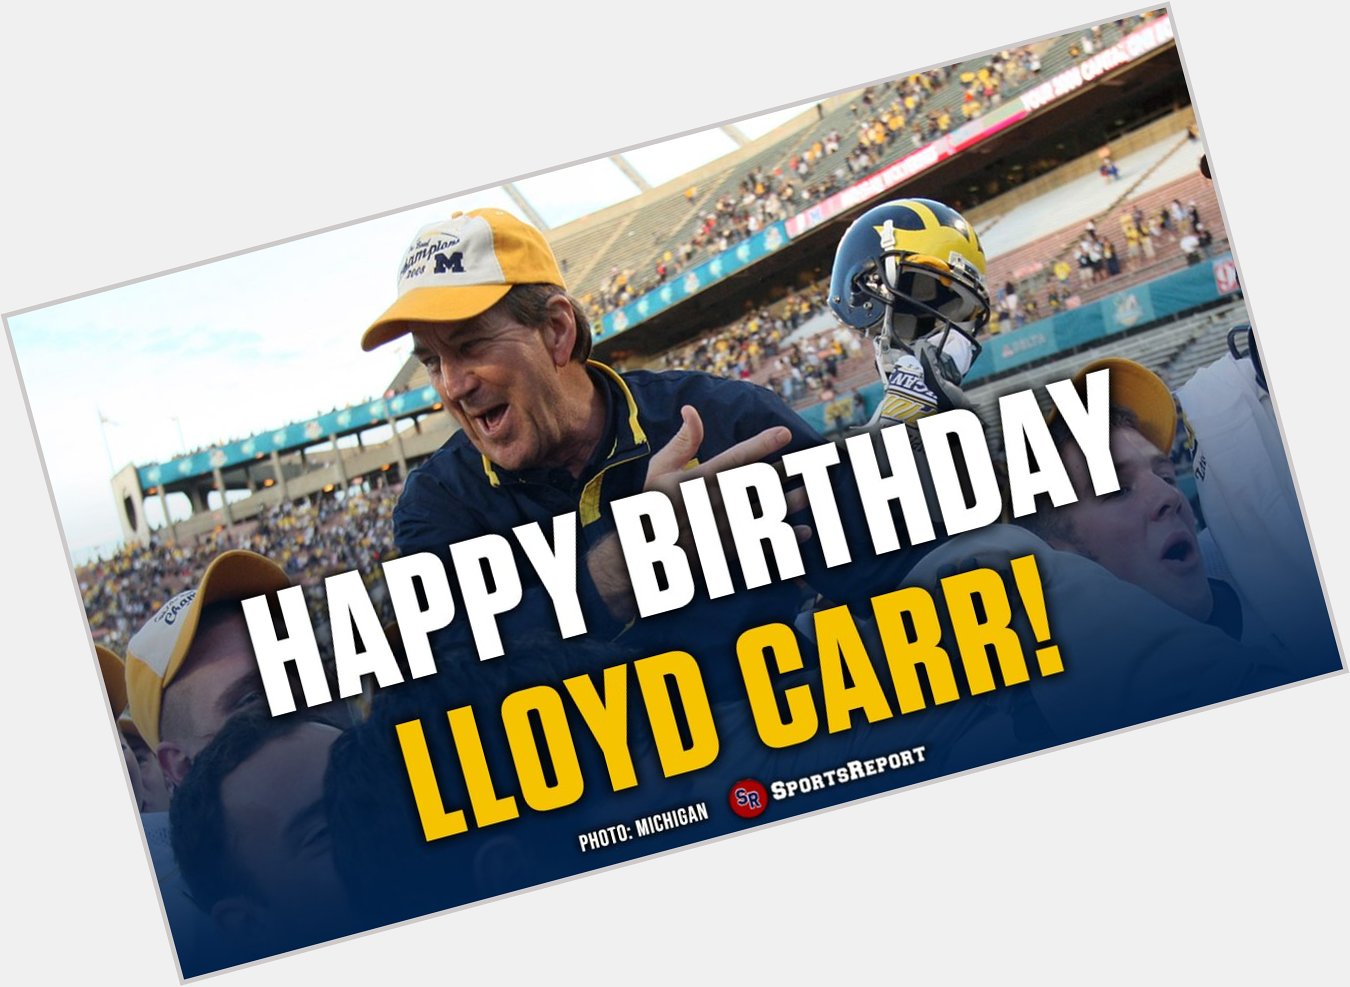  Fans, let\s wish legend Lloyd Carr a Happy Birthday! 